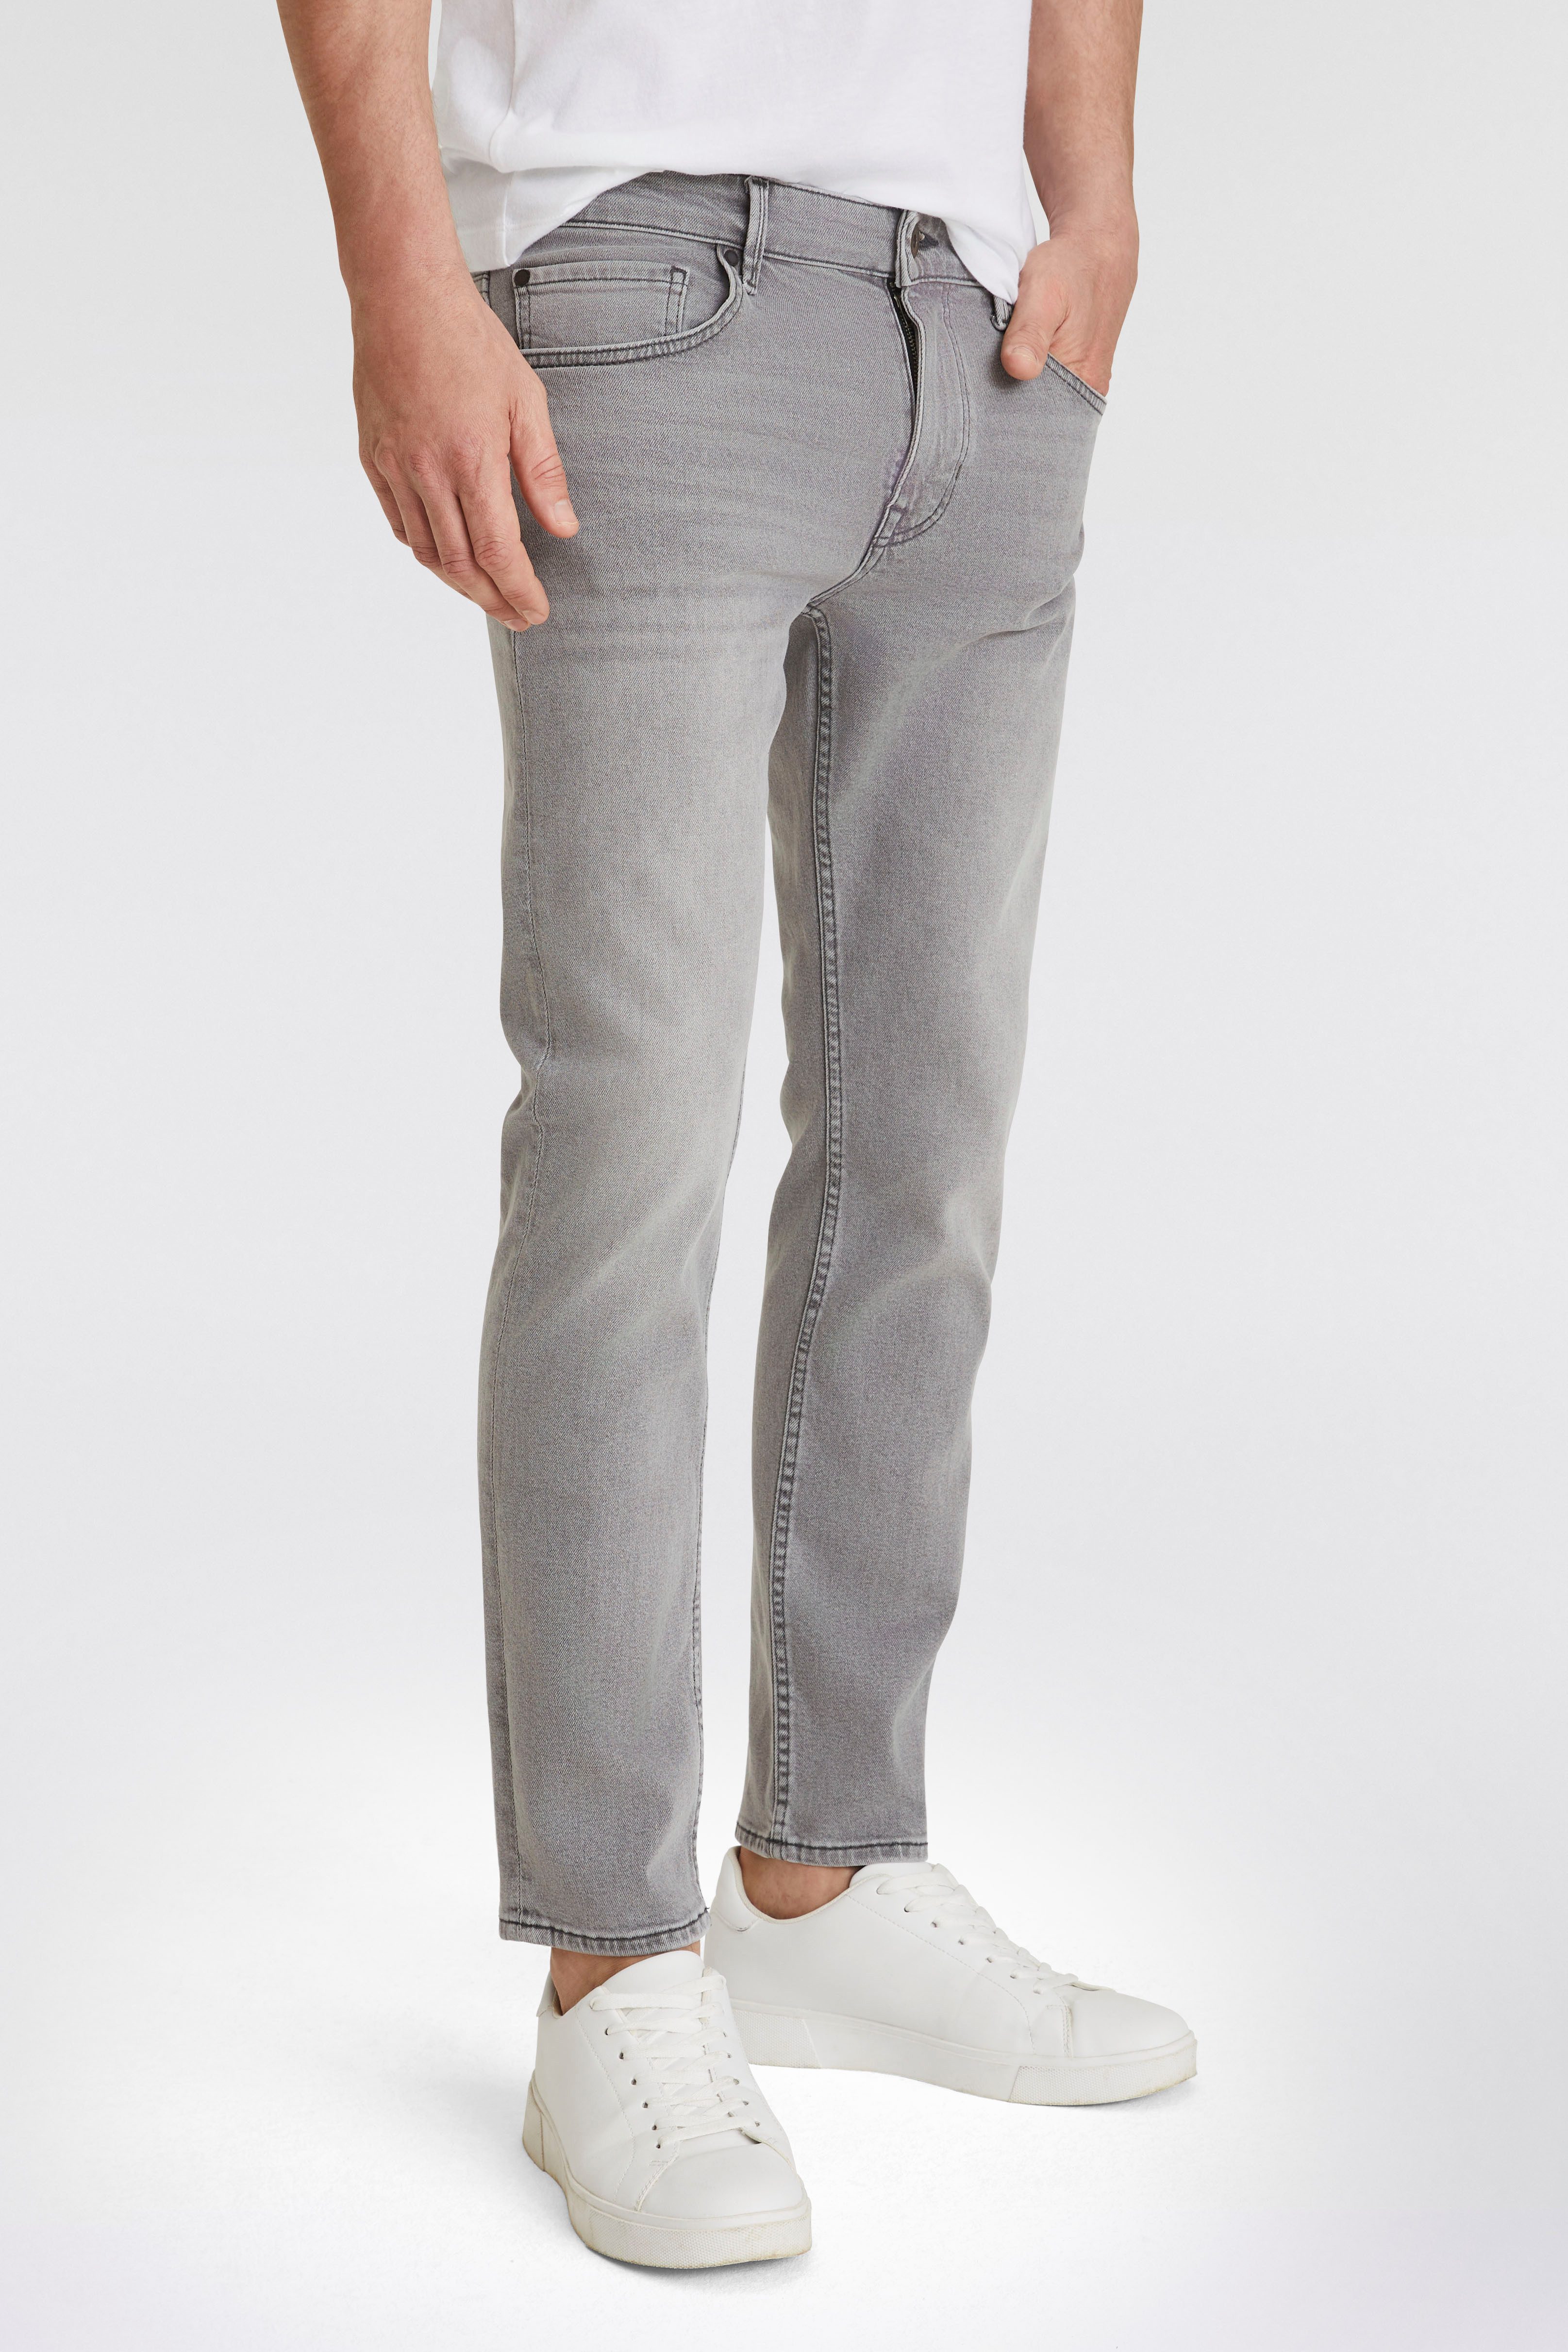 Marc O'Polo 5-Pocket-Jeans SJÖBO shaped